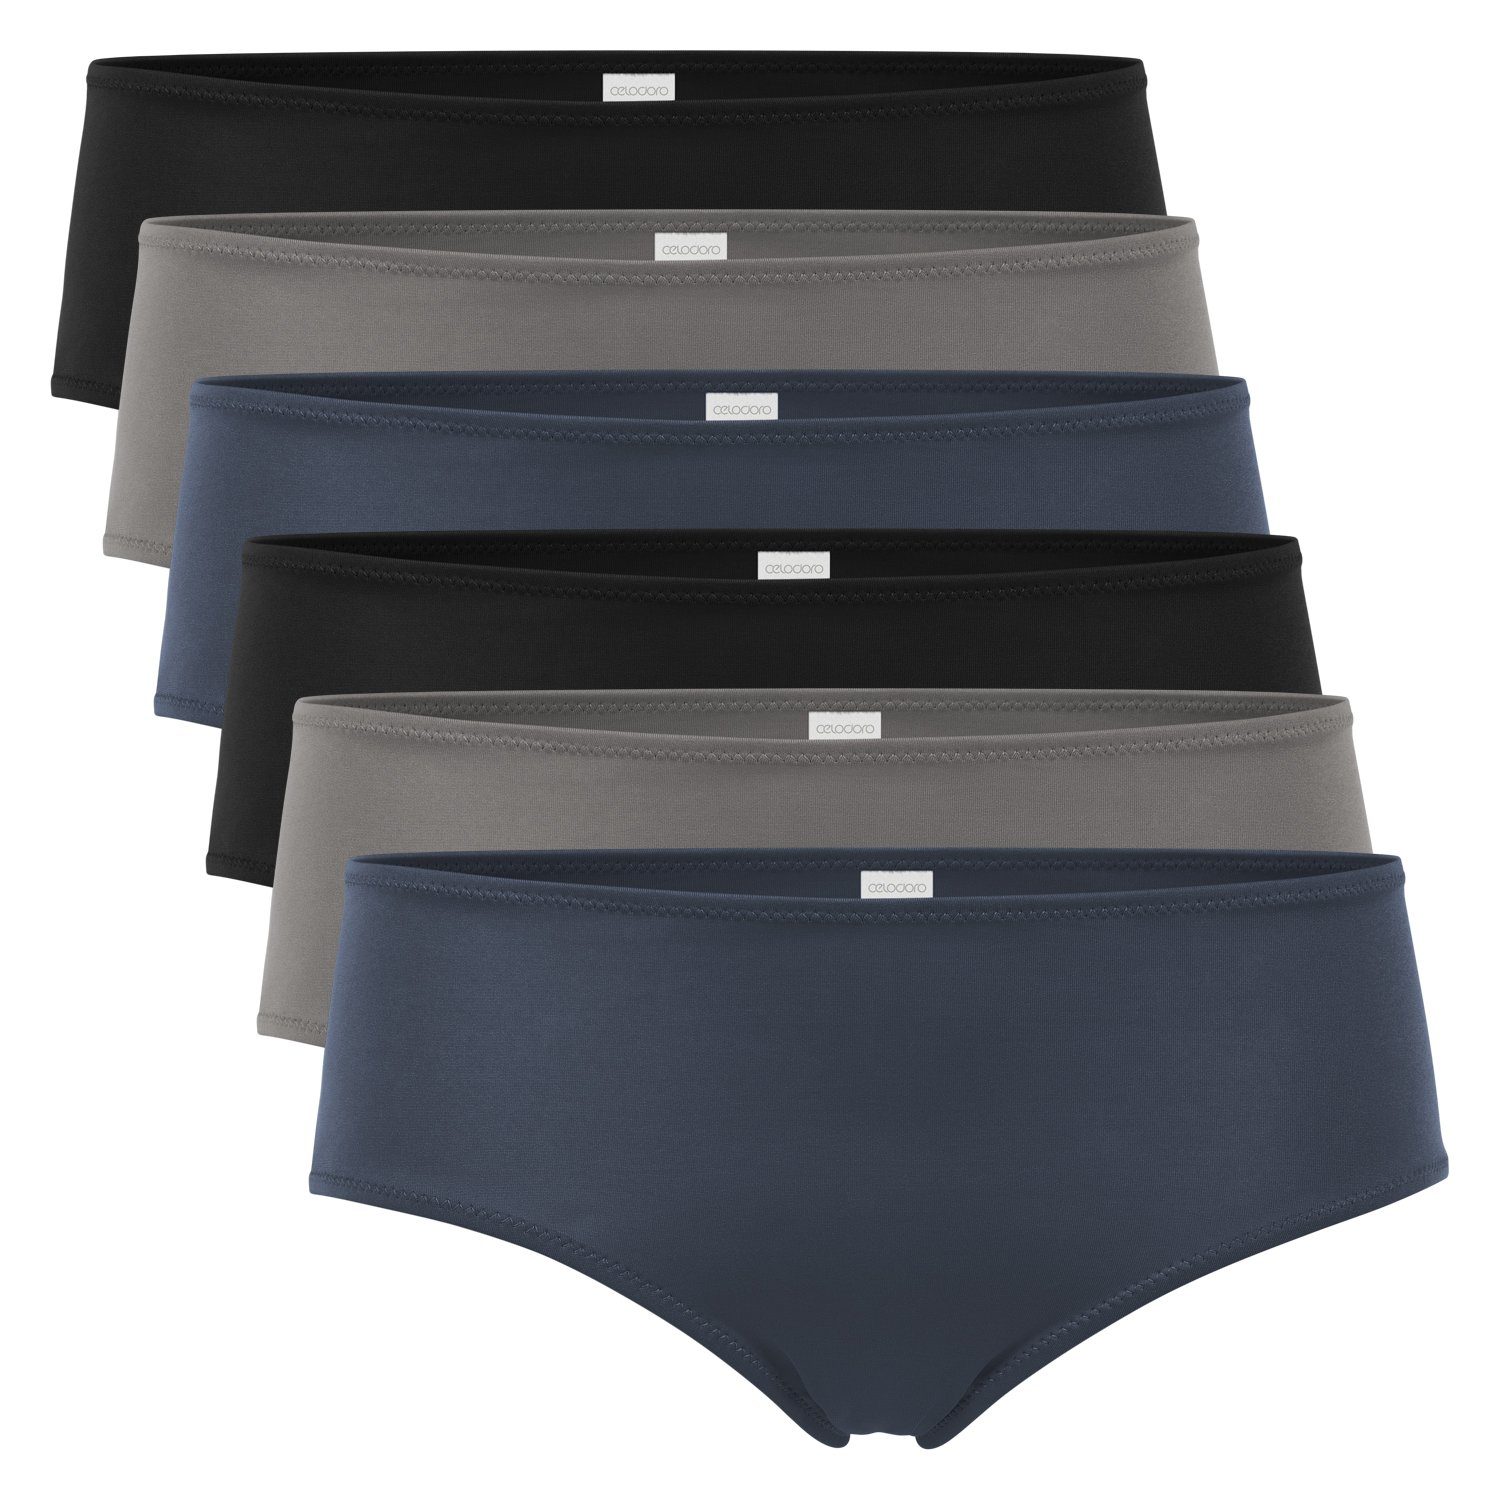 Hipster Dry-Fasern Panties Mix Damen celodoro (6er Quick Panty Panty Pack) aus